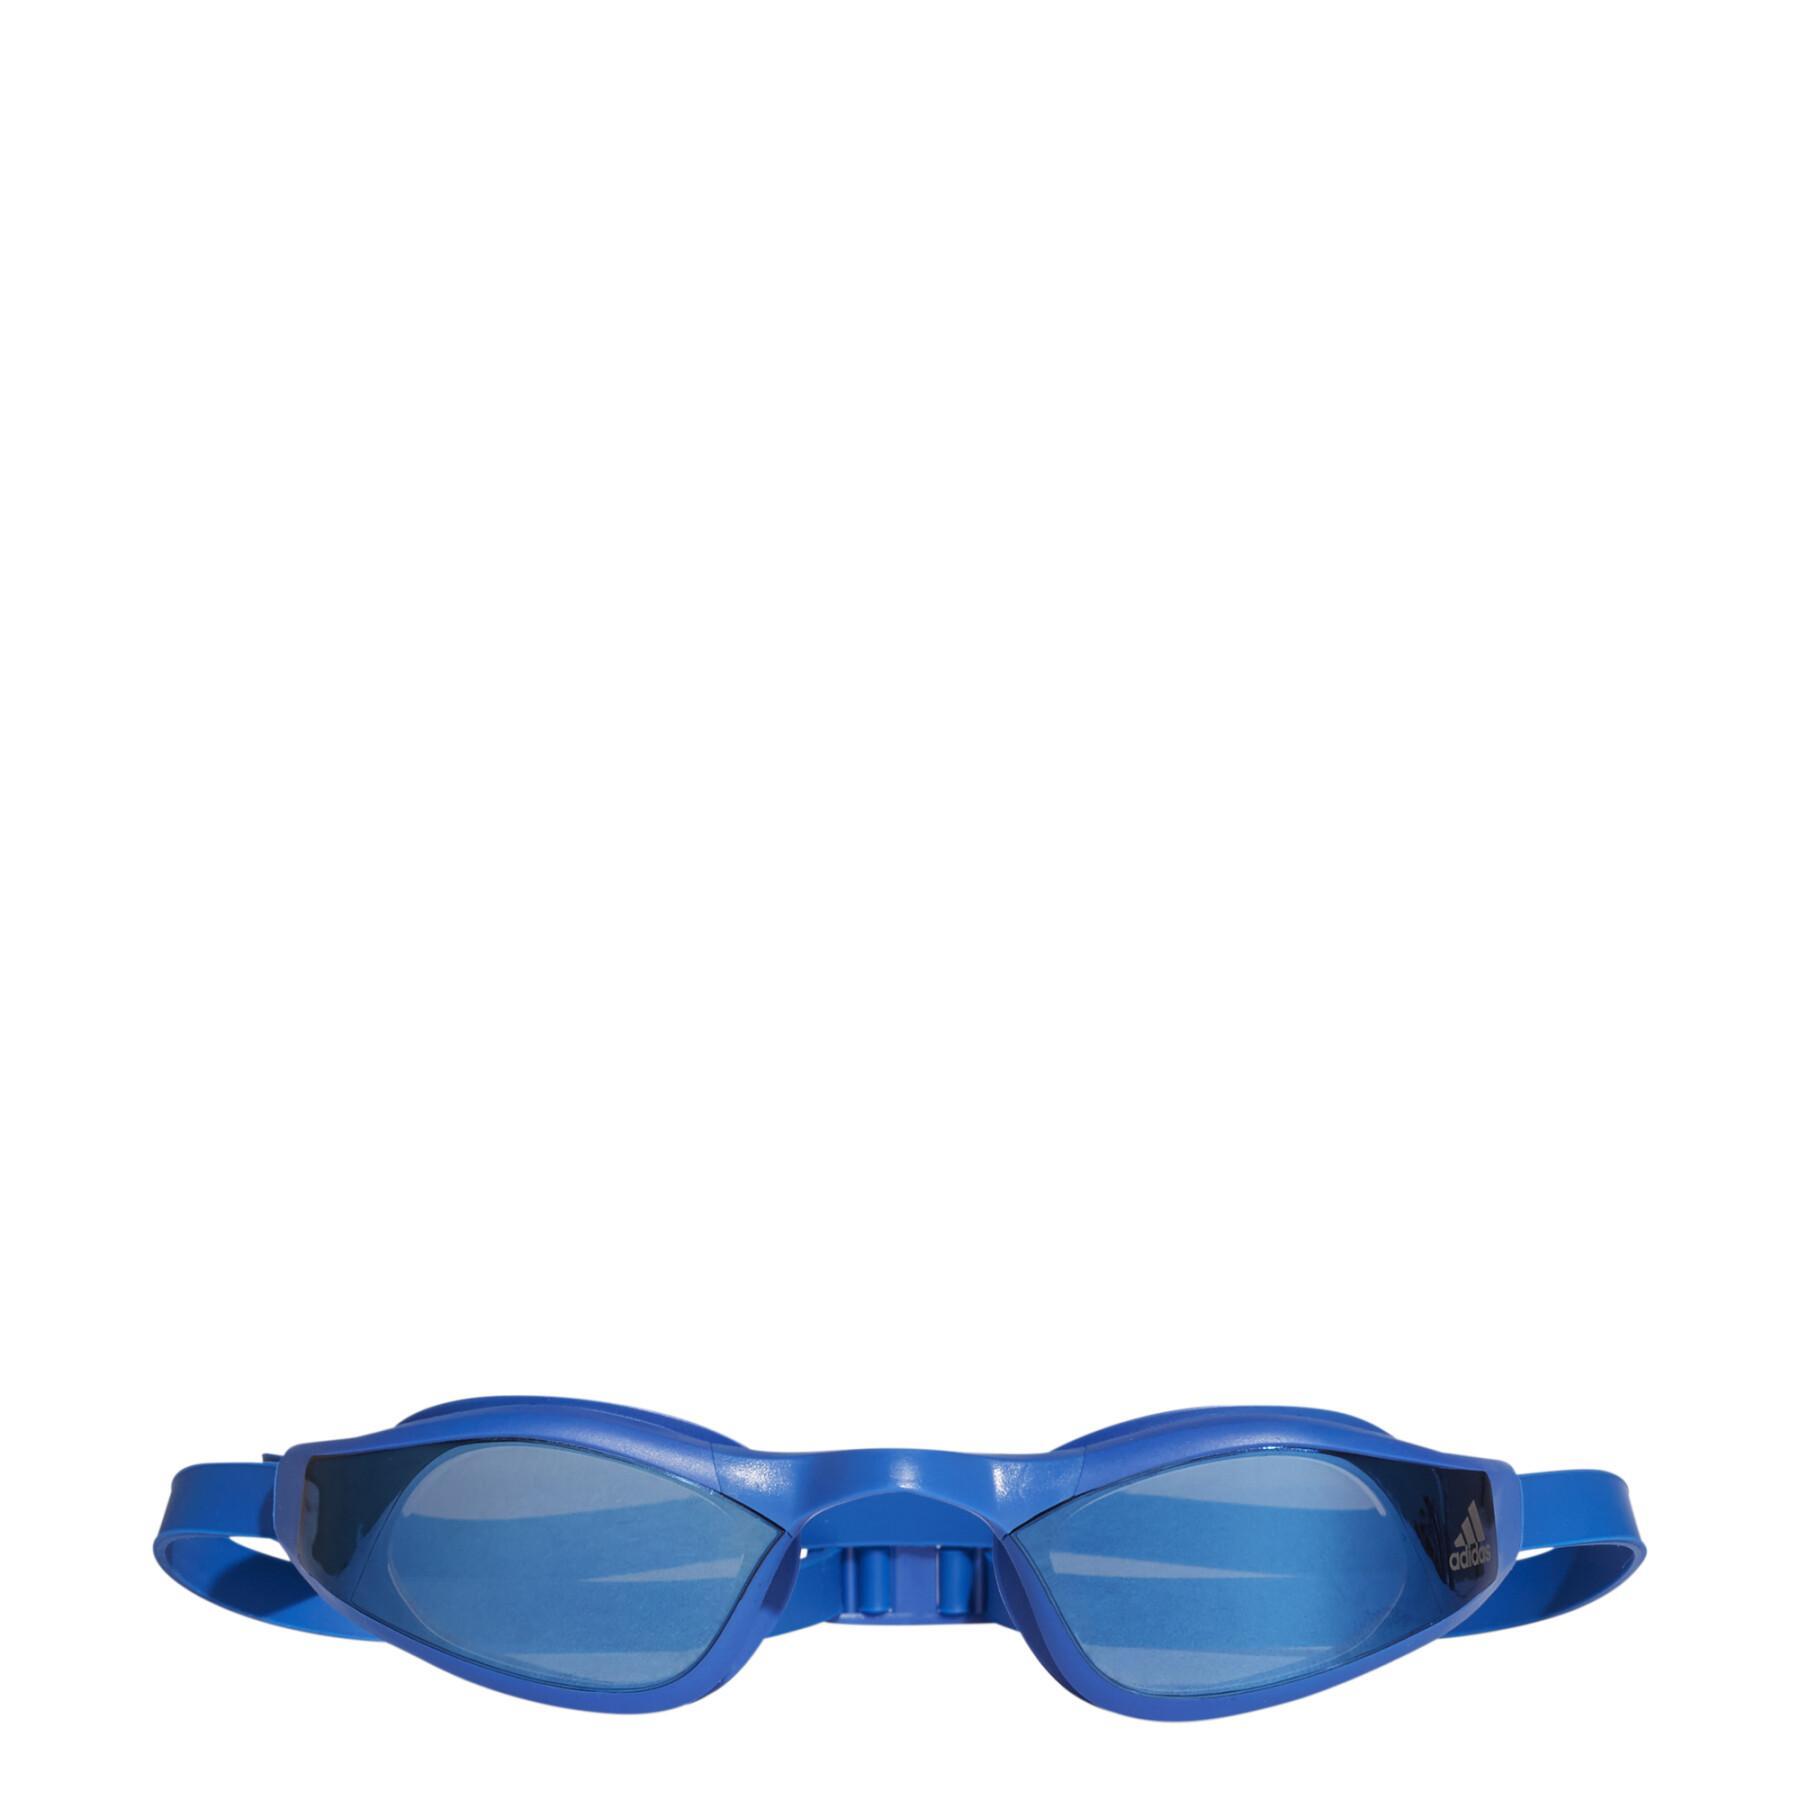 Zwembril met spiegeleffect adidas persistar race